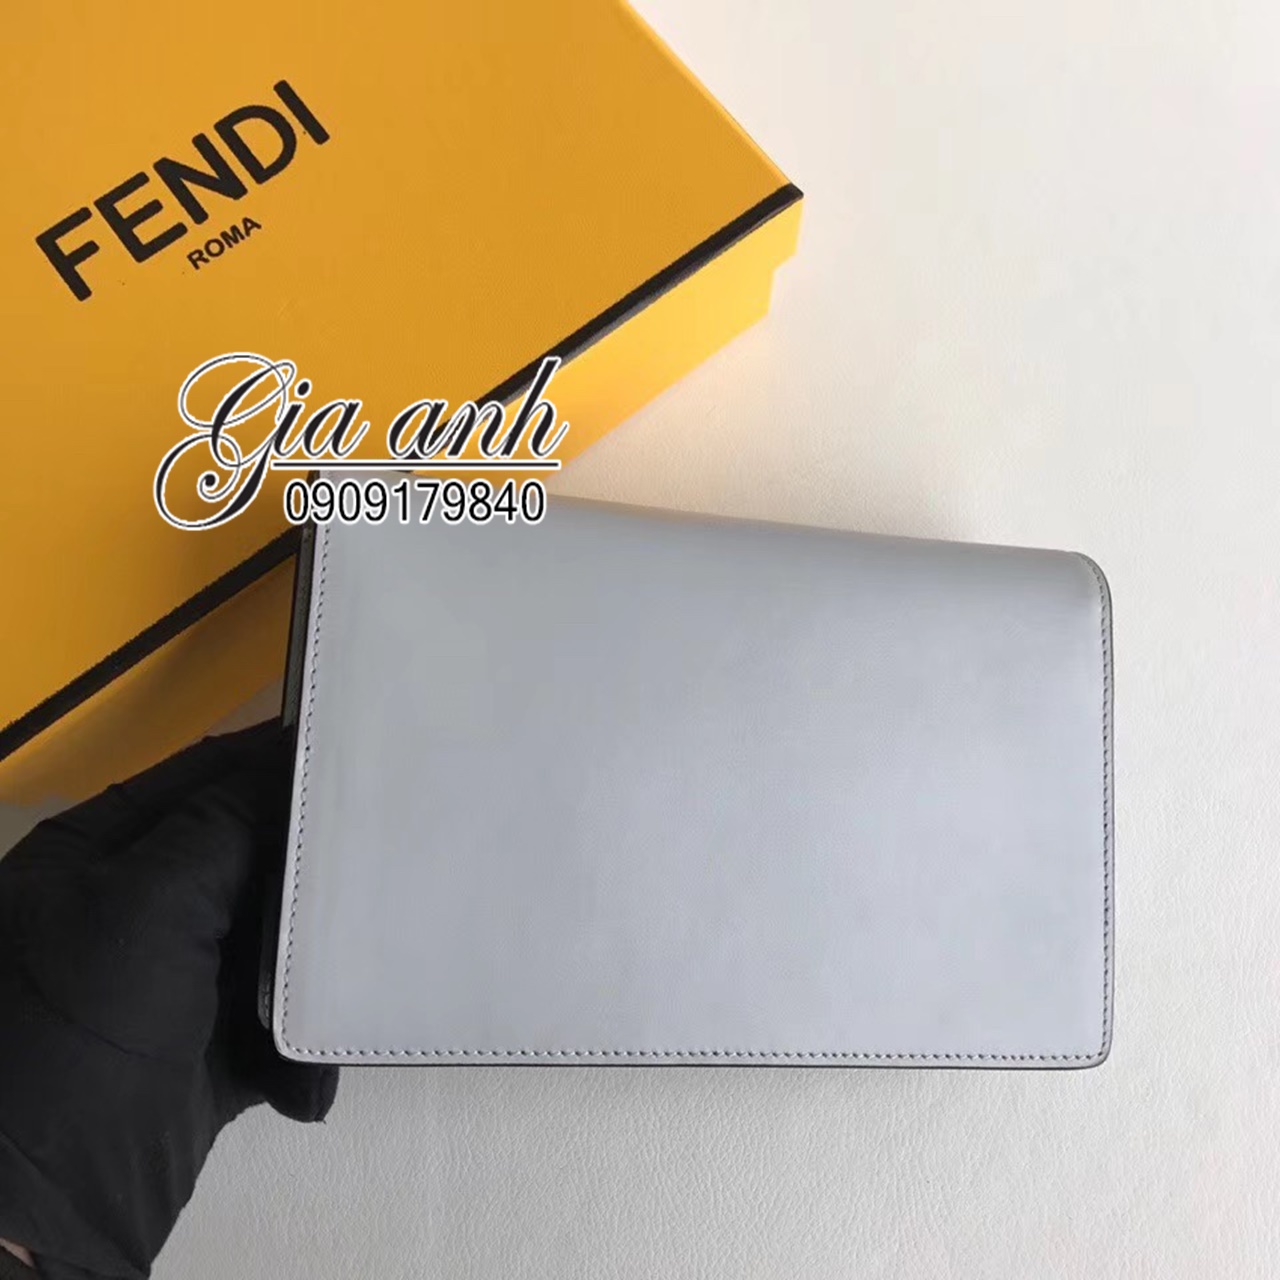 Túi xách Fendi siêu cấp - FD000014